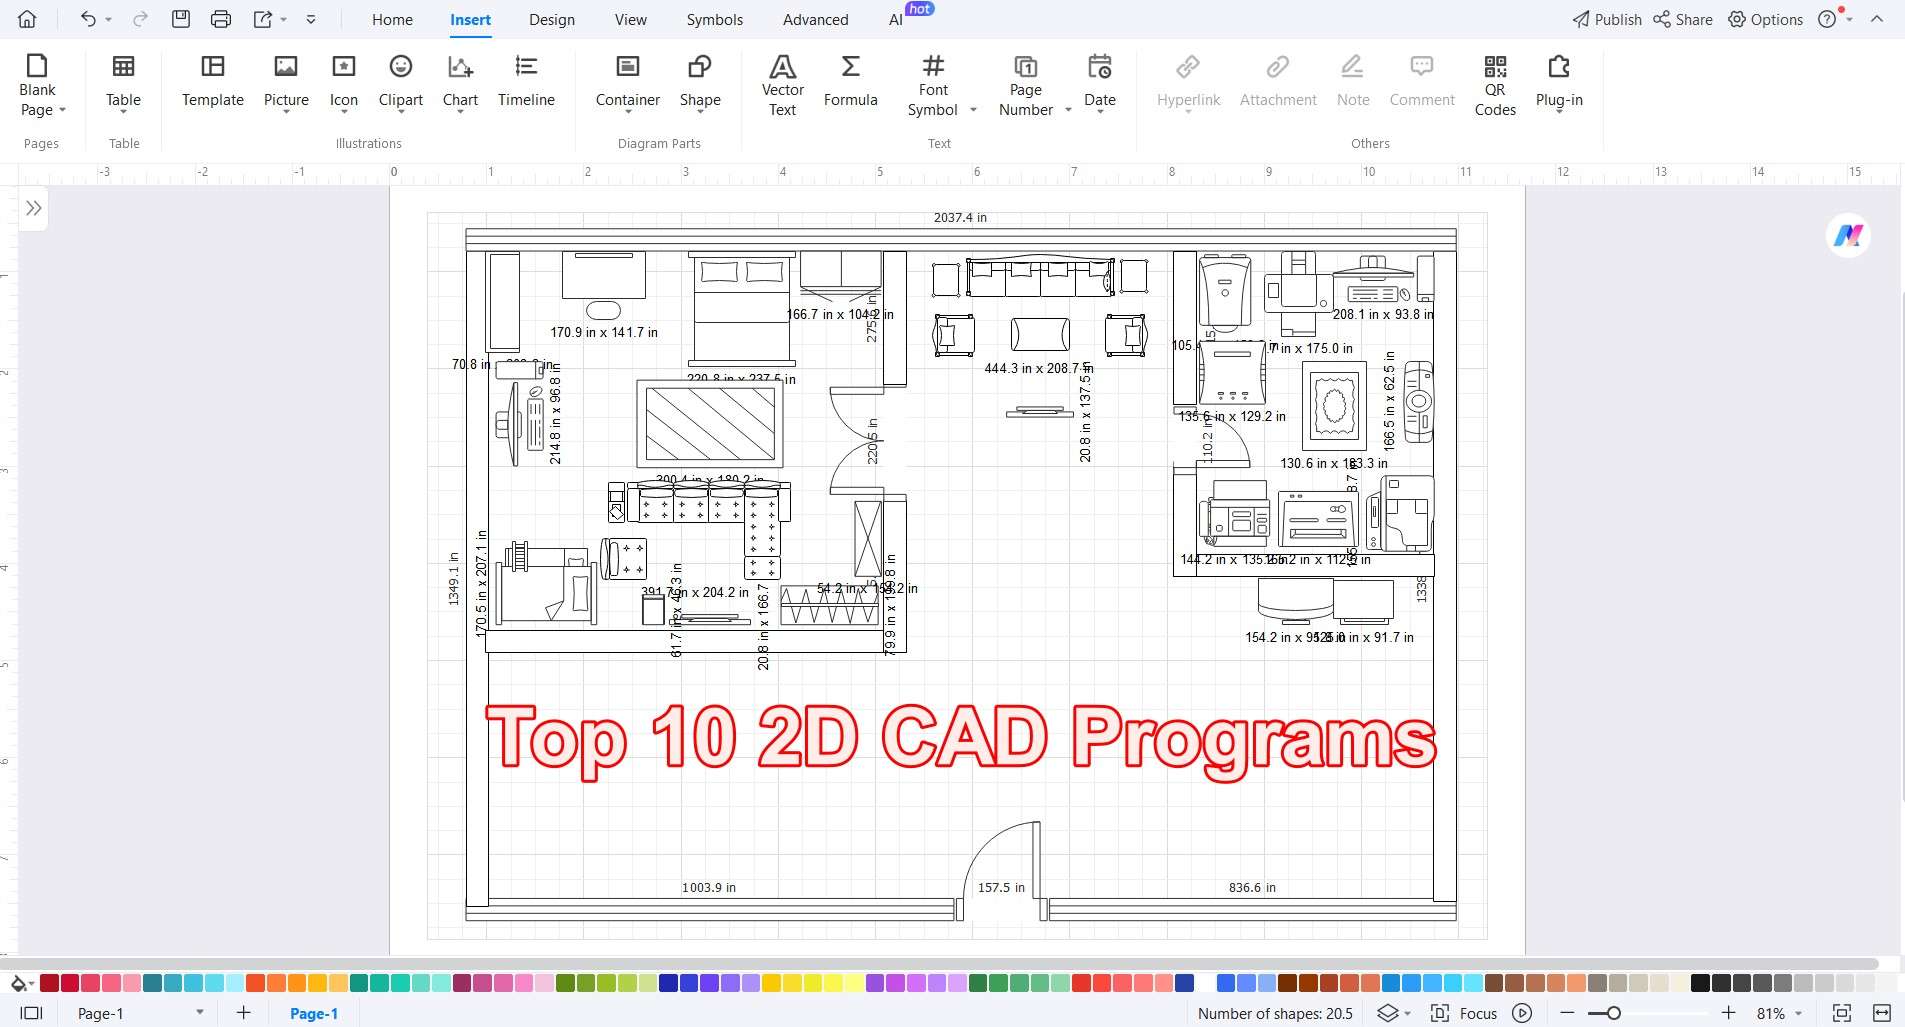 2d cad programs